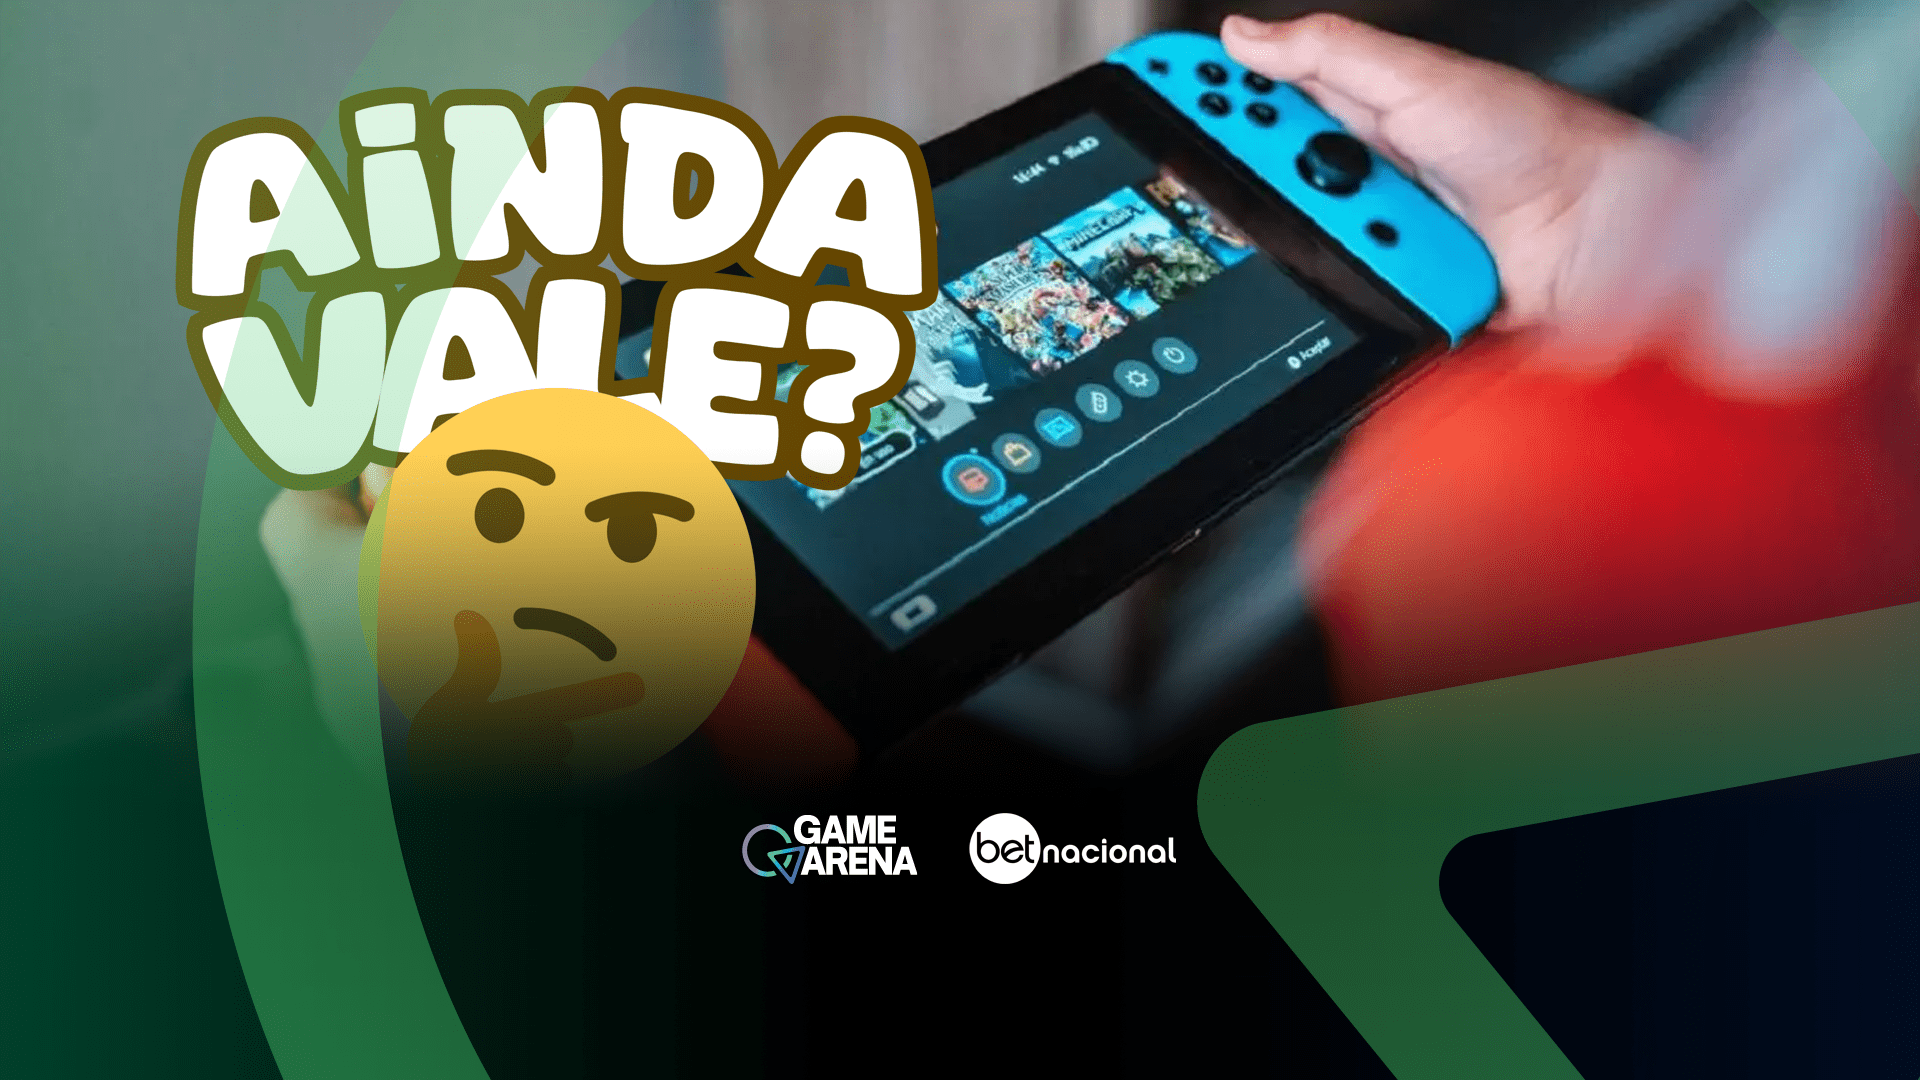 Jogo exclusivo do Nintendo Switch será encerrado; saiba qual